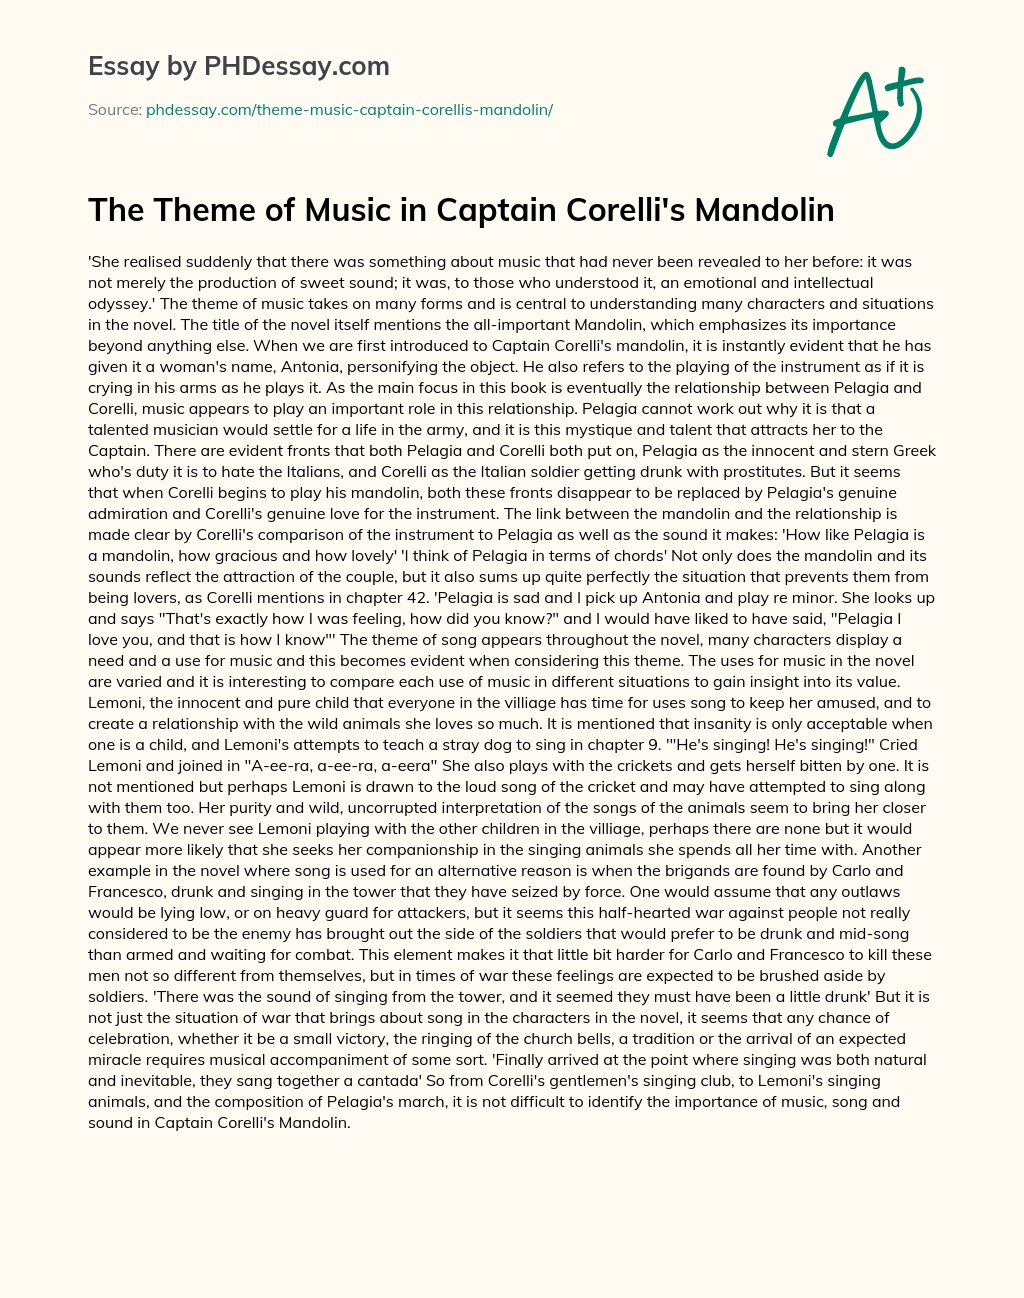 The Theme of Music in Captain Corelli’s Mandolin essay